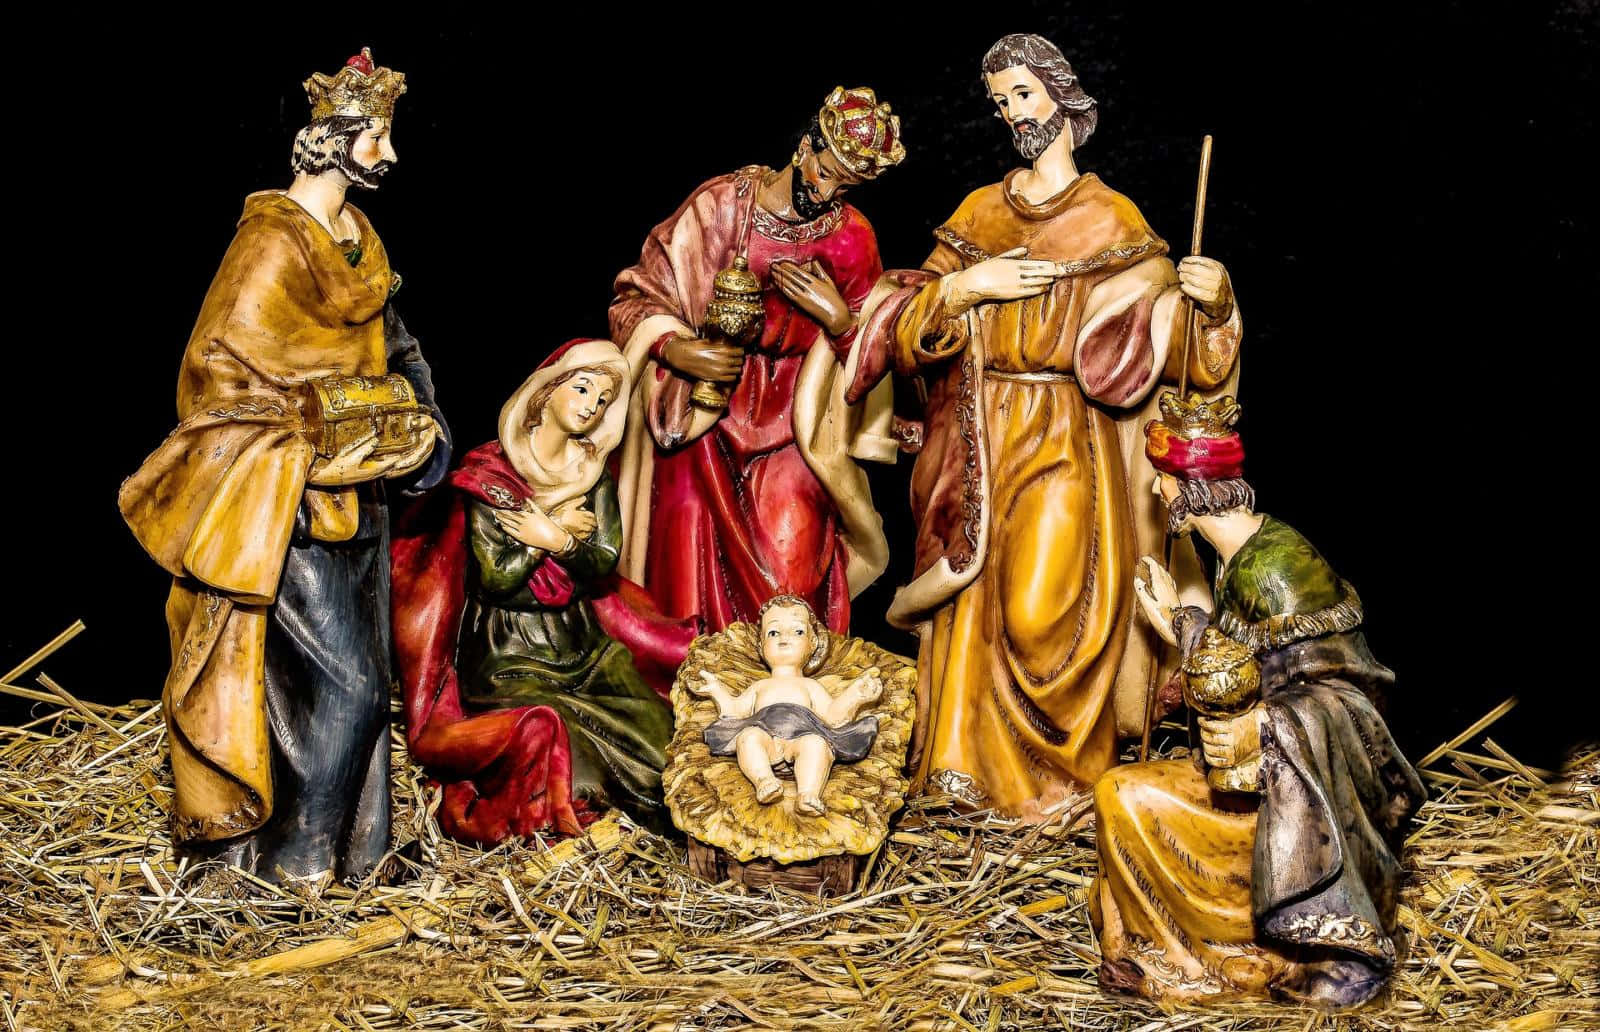 Umacena De Natividade Retratando A Vida De Jesus